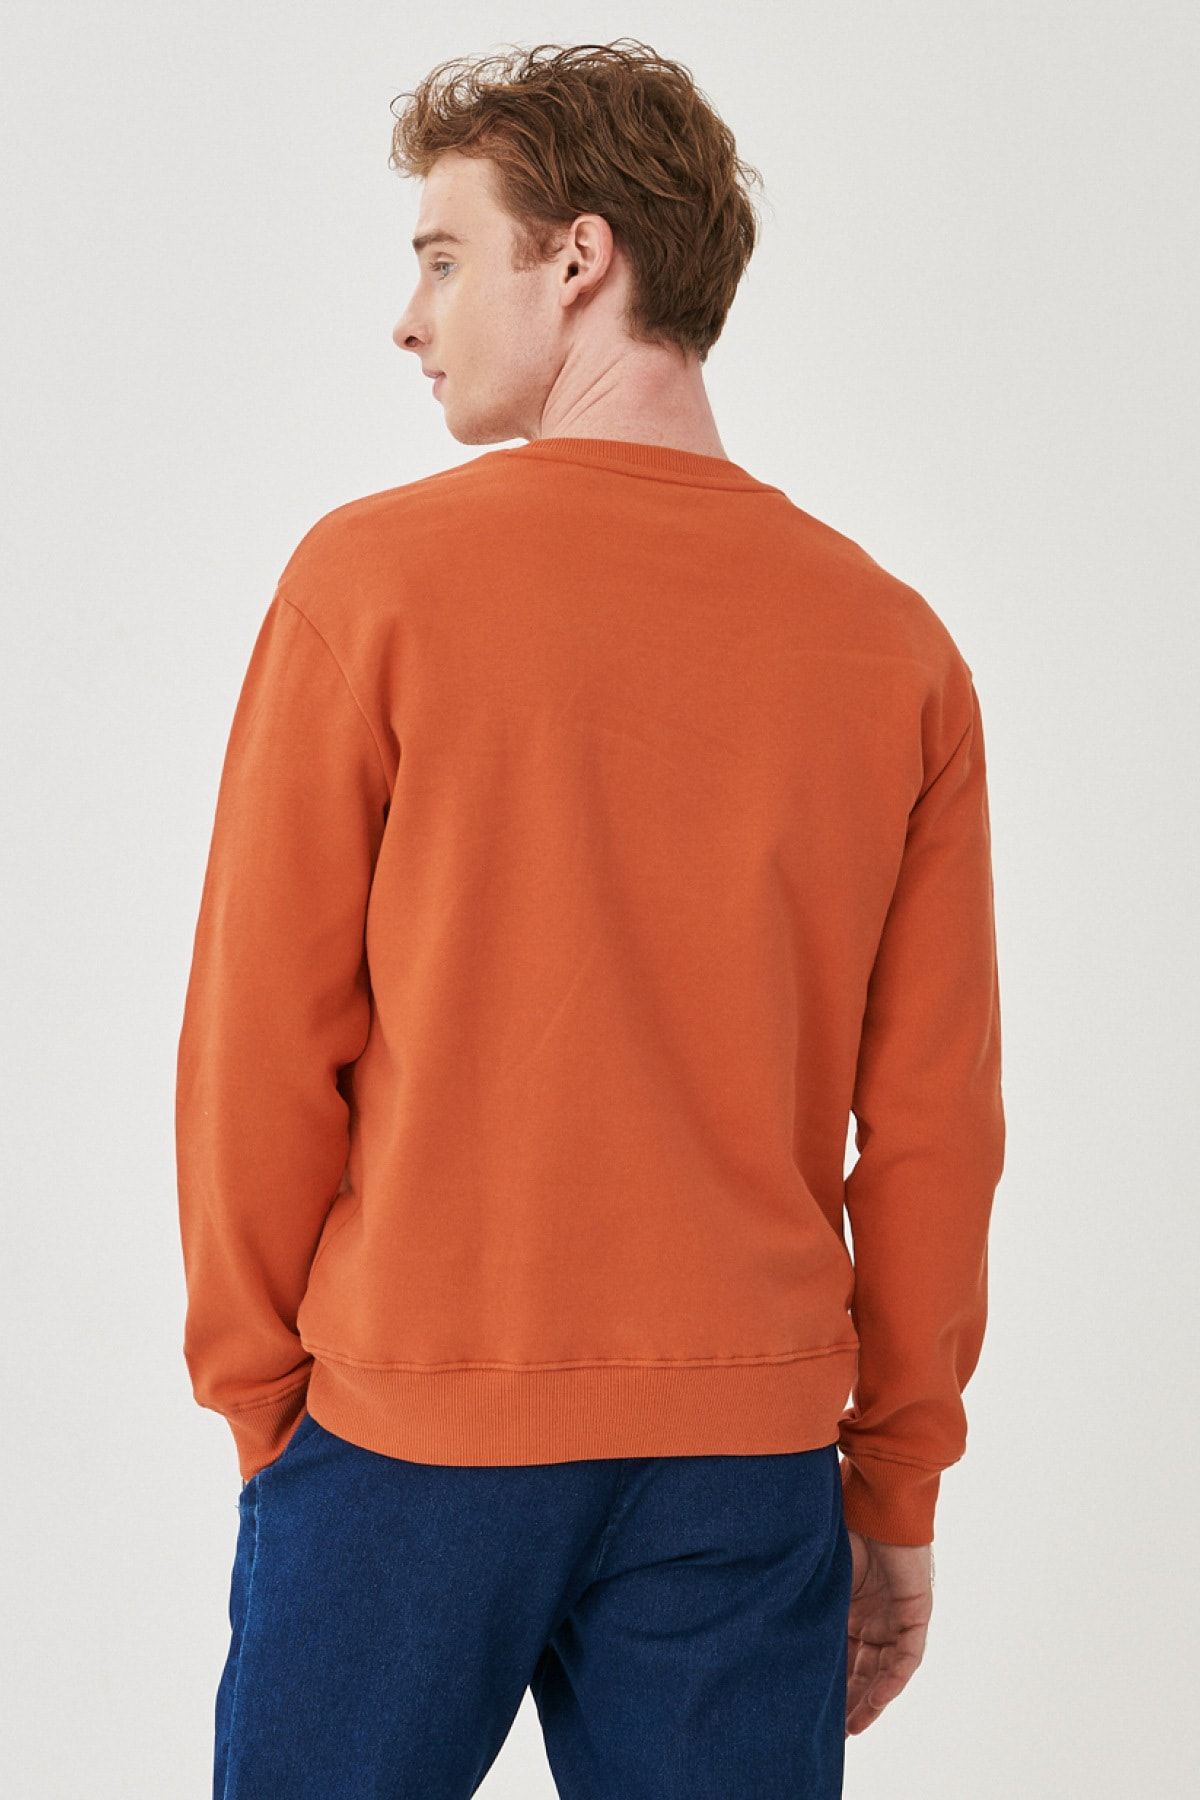 Fit Neck Lee Cut Sweatshirt Cotton Crew 100% Normal - Trendyol Regular